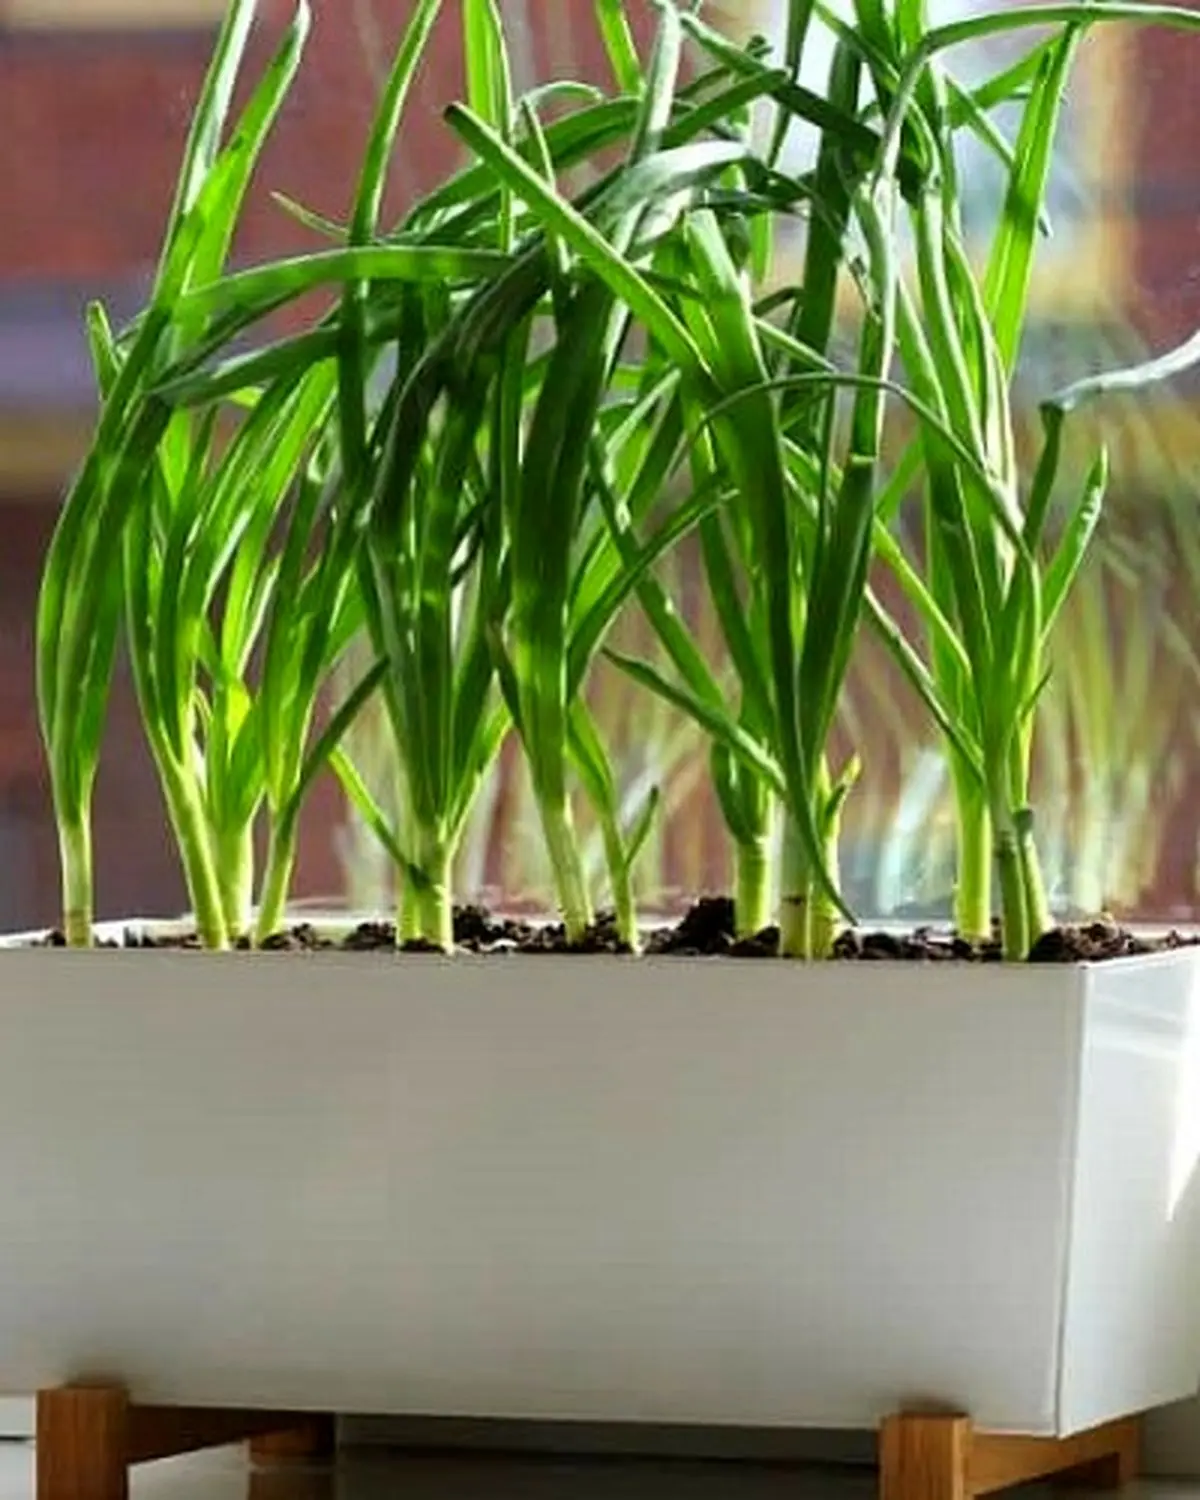 regrow-green-onions-in-soil